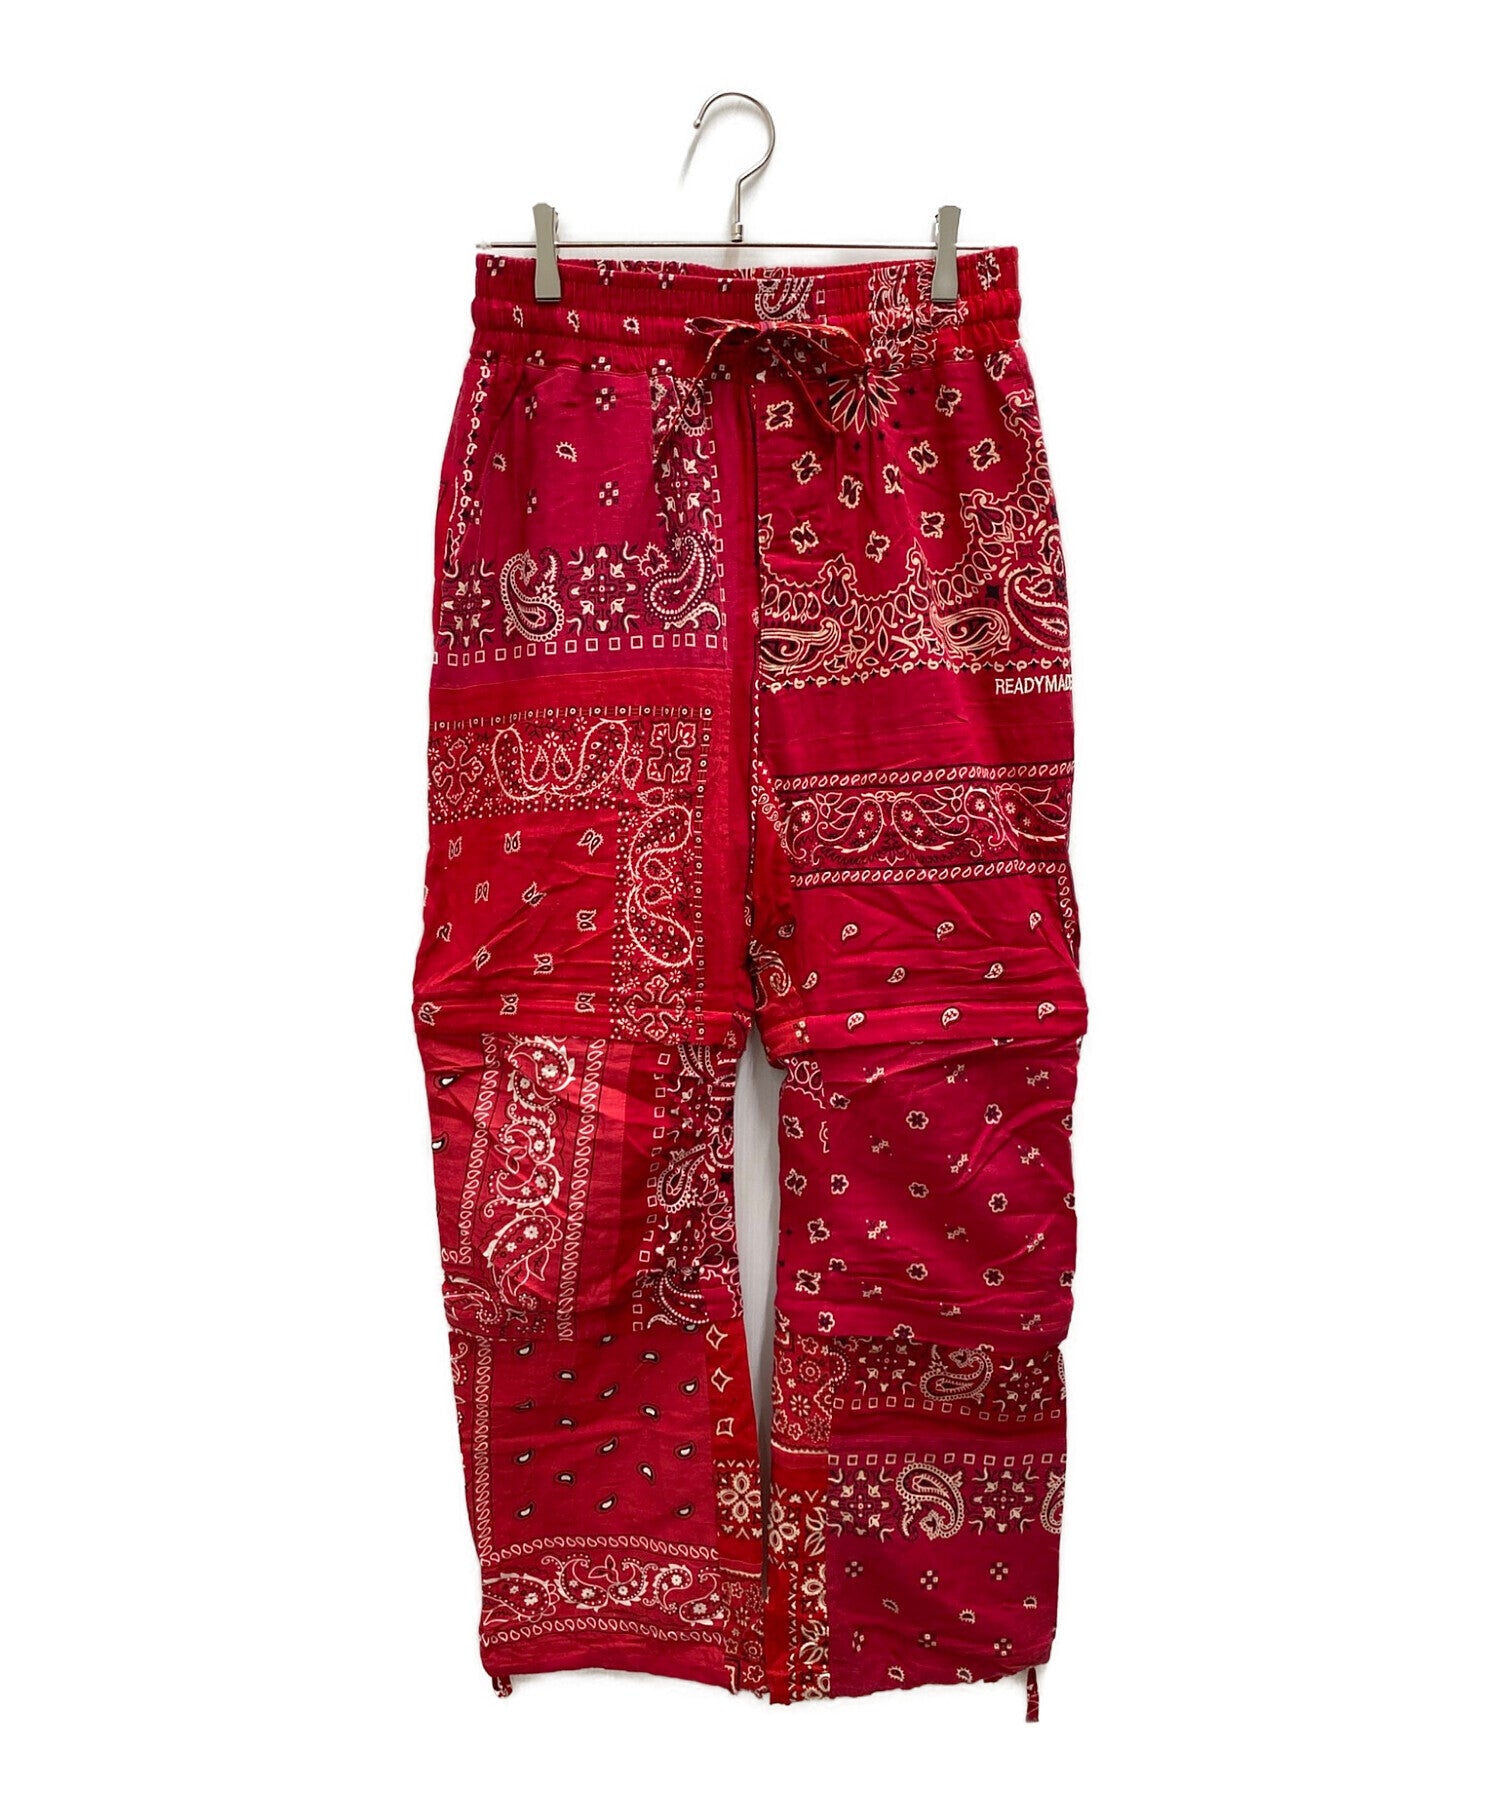 【本物保証SALE】READYMADE BANDANA SLEEPING PANTS 2 RED パンツ